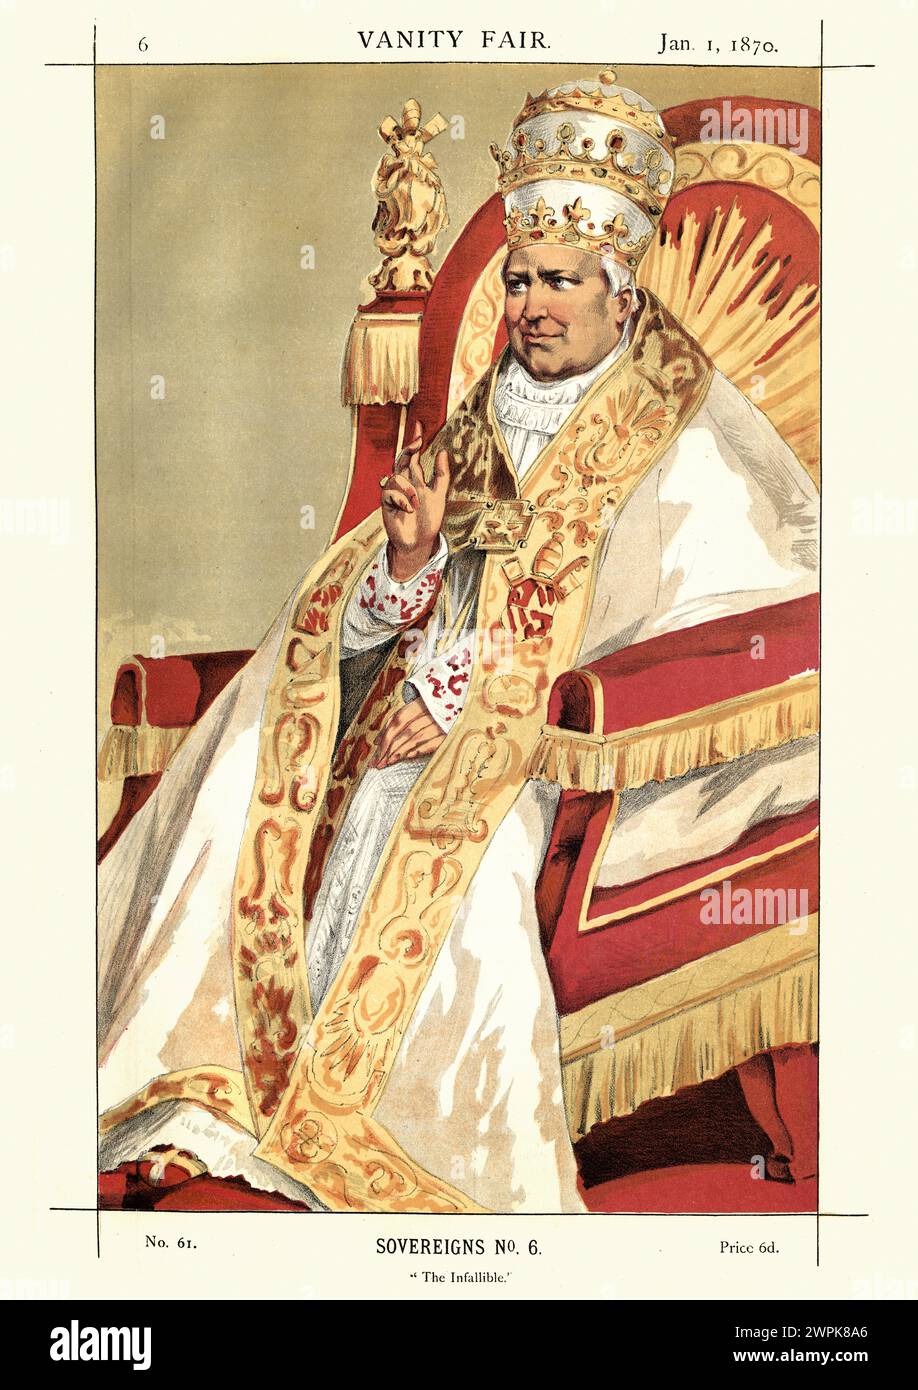 Incisione vintage di Papa Pio IX L'infallibile. Da Vanity Fair1869. Cromolitografia. Capo della Chiesa cattolica dal 16 giugno 1846 al suo decesso Foto Stock